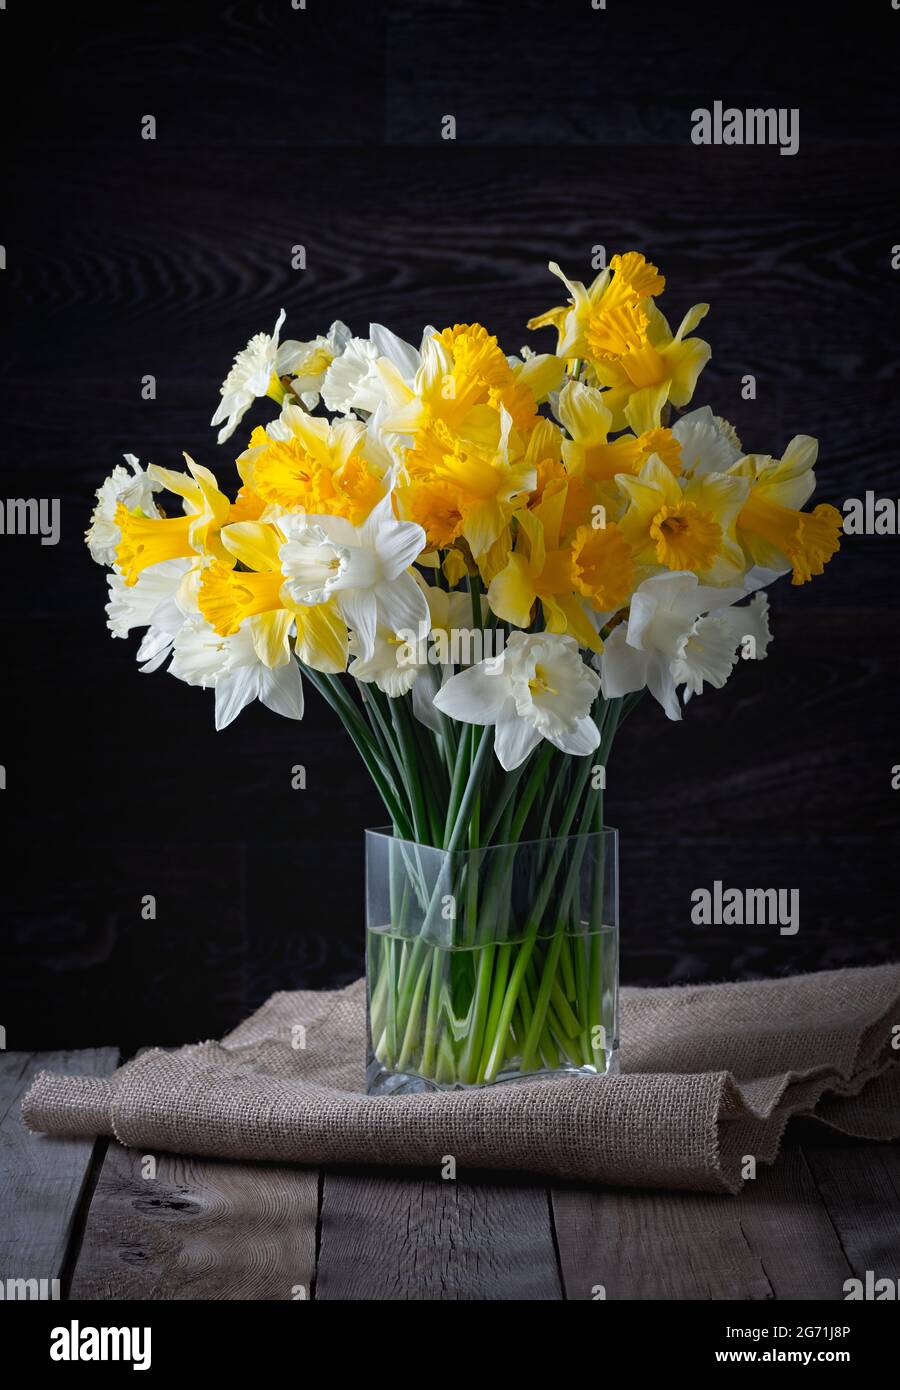 Printemps frais jonquilles jaune vif fleurs dans un vase en verre sur fond sombre. Copier l'espace. Banque D'Images